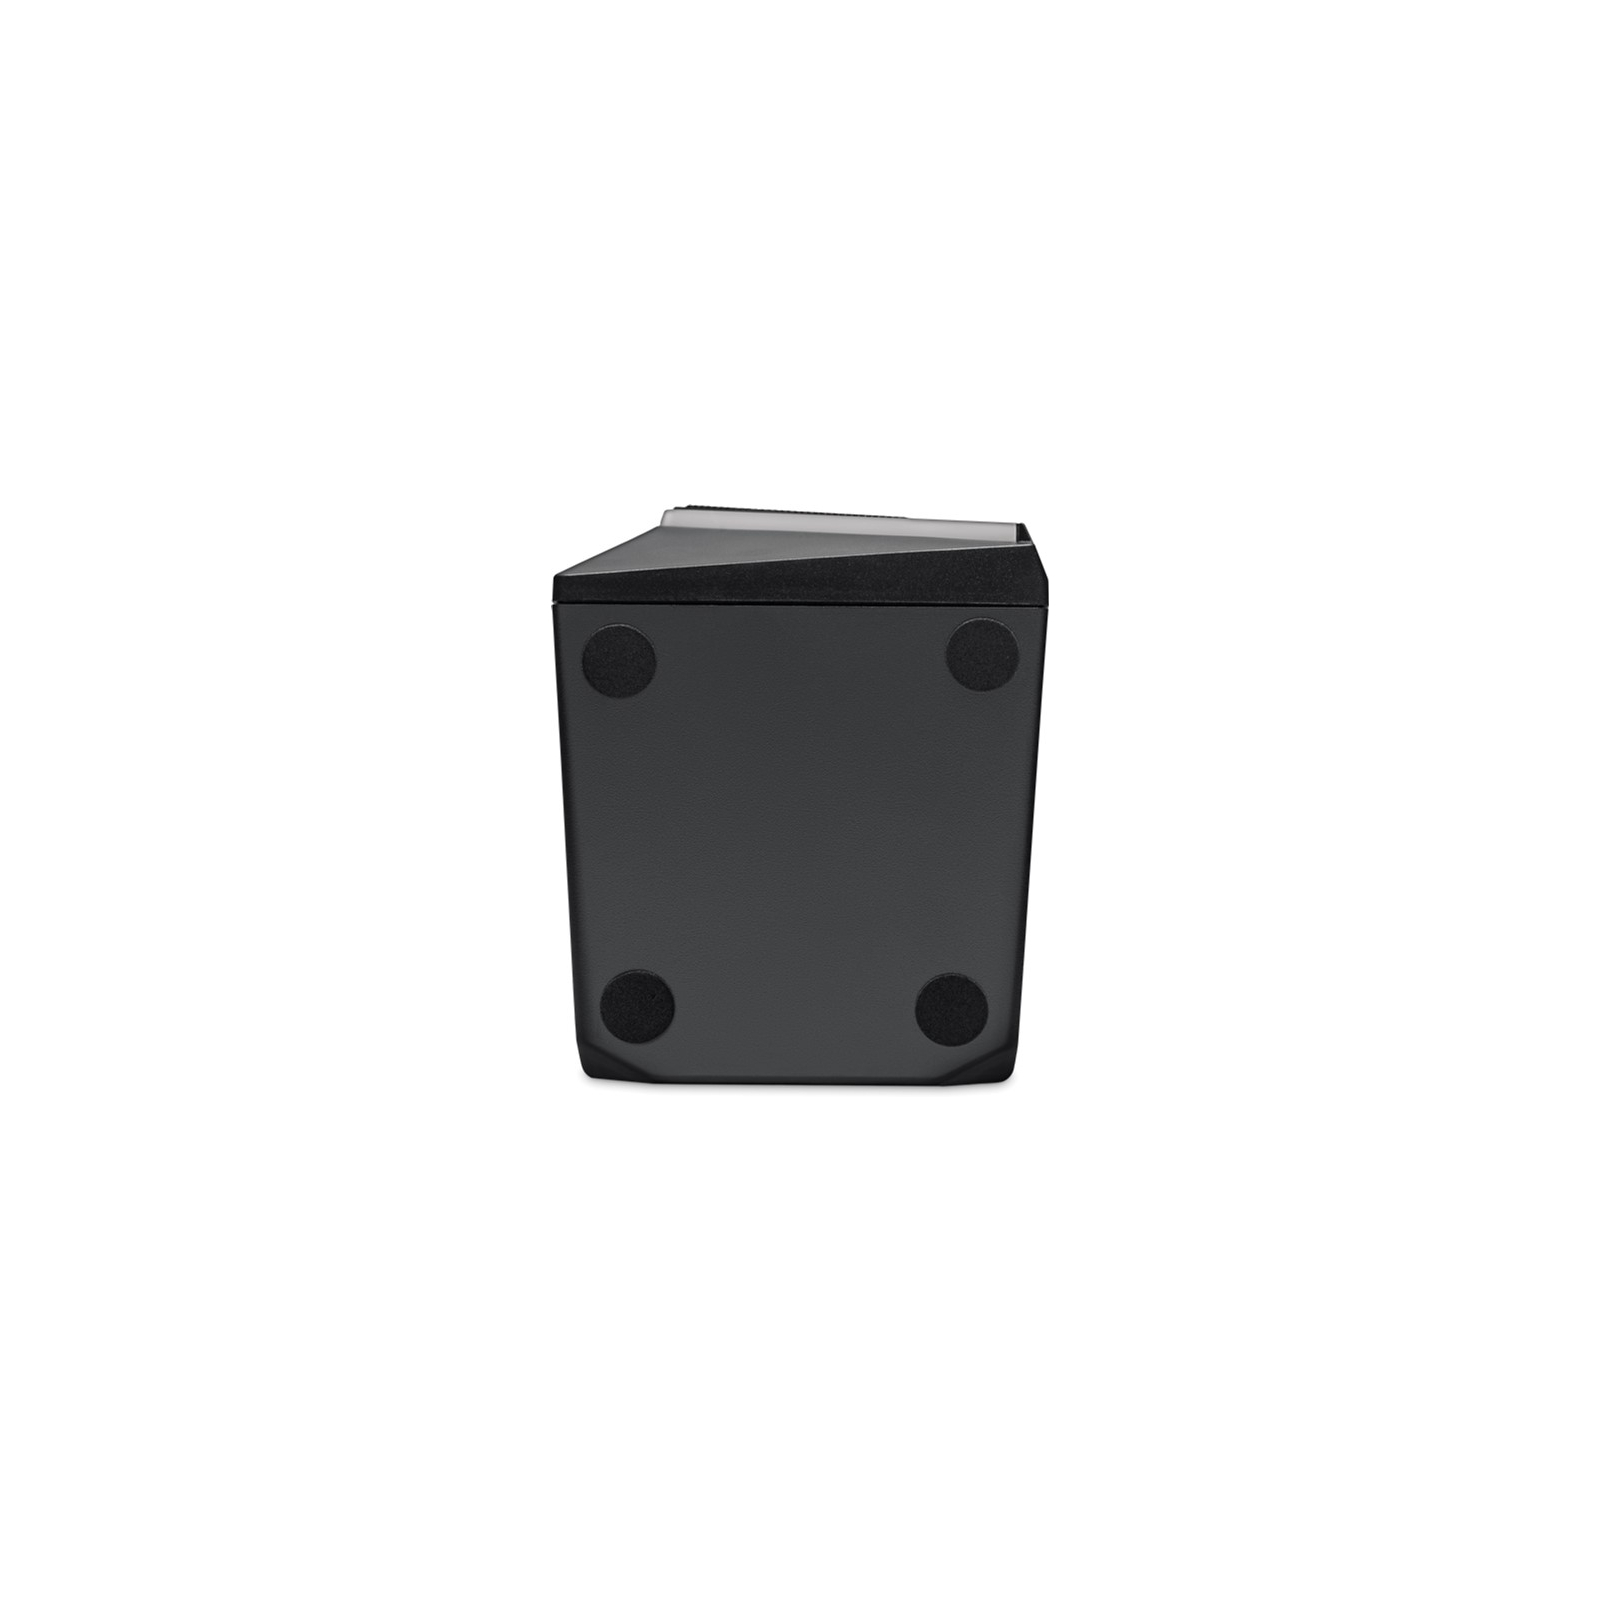 Акустична система Redragon Anvil GS520 LED USB Black (77878) зображення 8